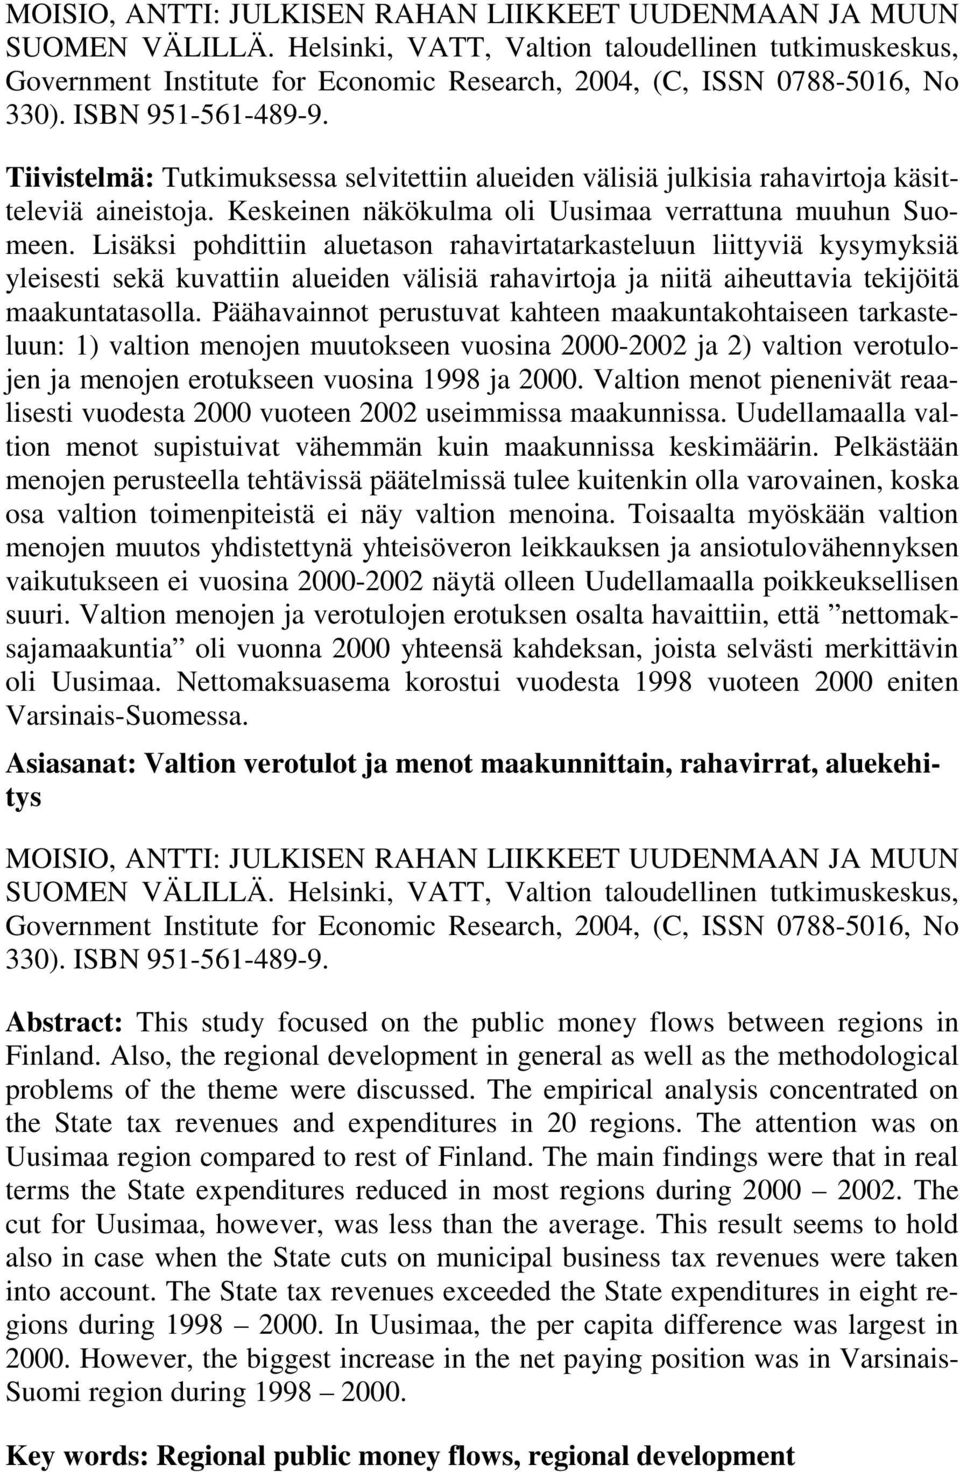 Tiivistelmä: Tutkimuksessa selvitettiin alueiden välisiä julkisia rahavirtoja käsitteleviä aineistoja. Keskeinen näkökulma oli Uusimaa verrattuna muuhun Suomeen.